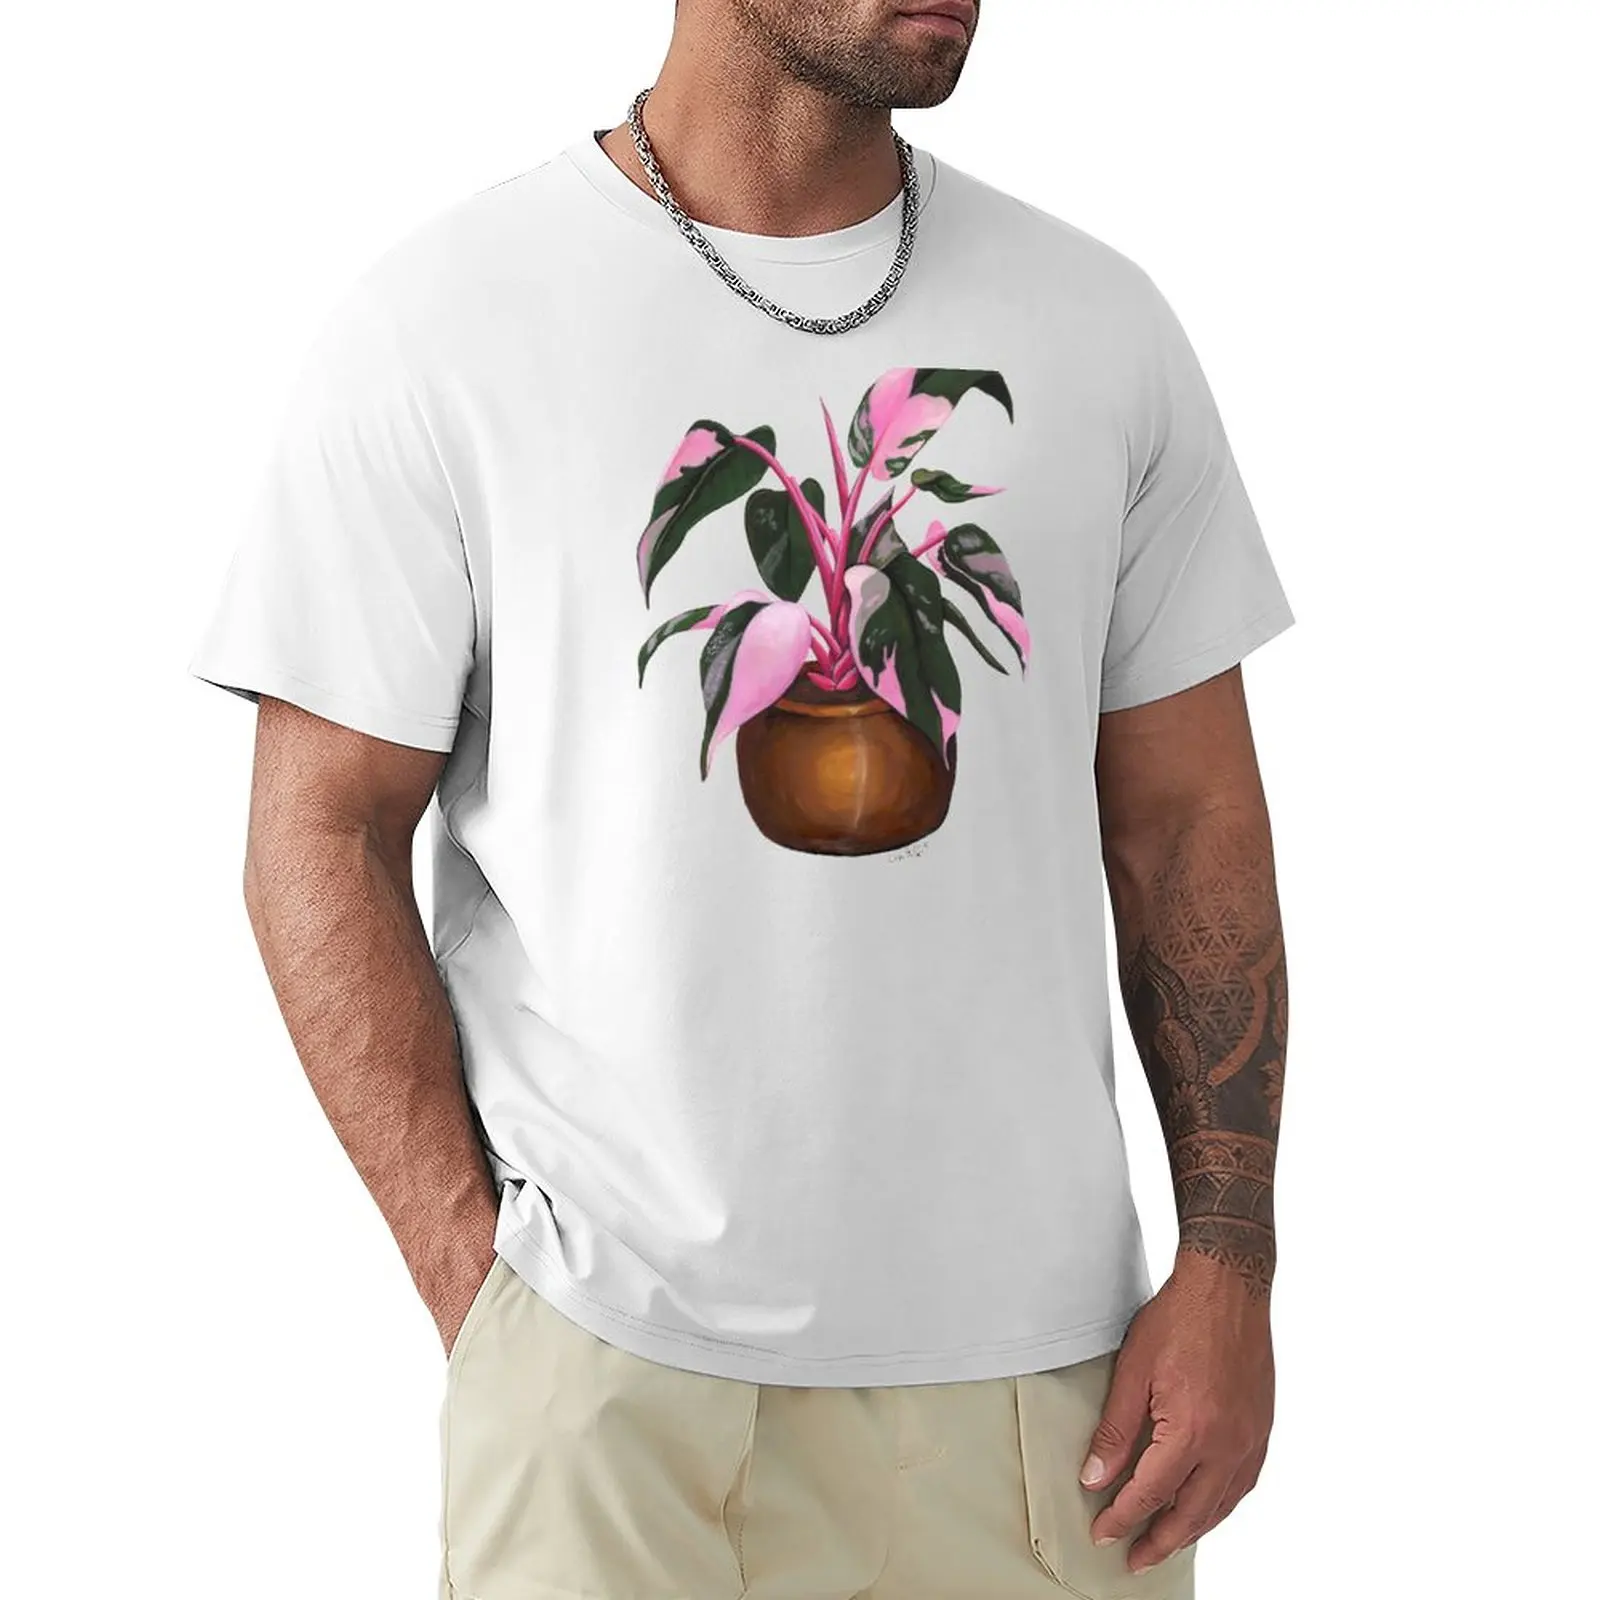 Футболка Philodendron 'Pink Princess' для мальчиков, белая, новая версия летнего топа, мужские футболки с графическим рисунком